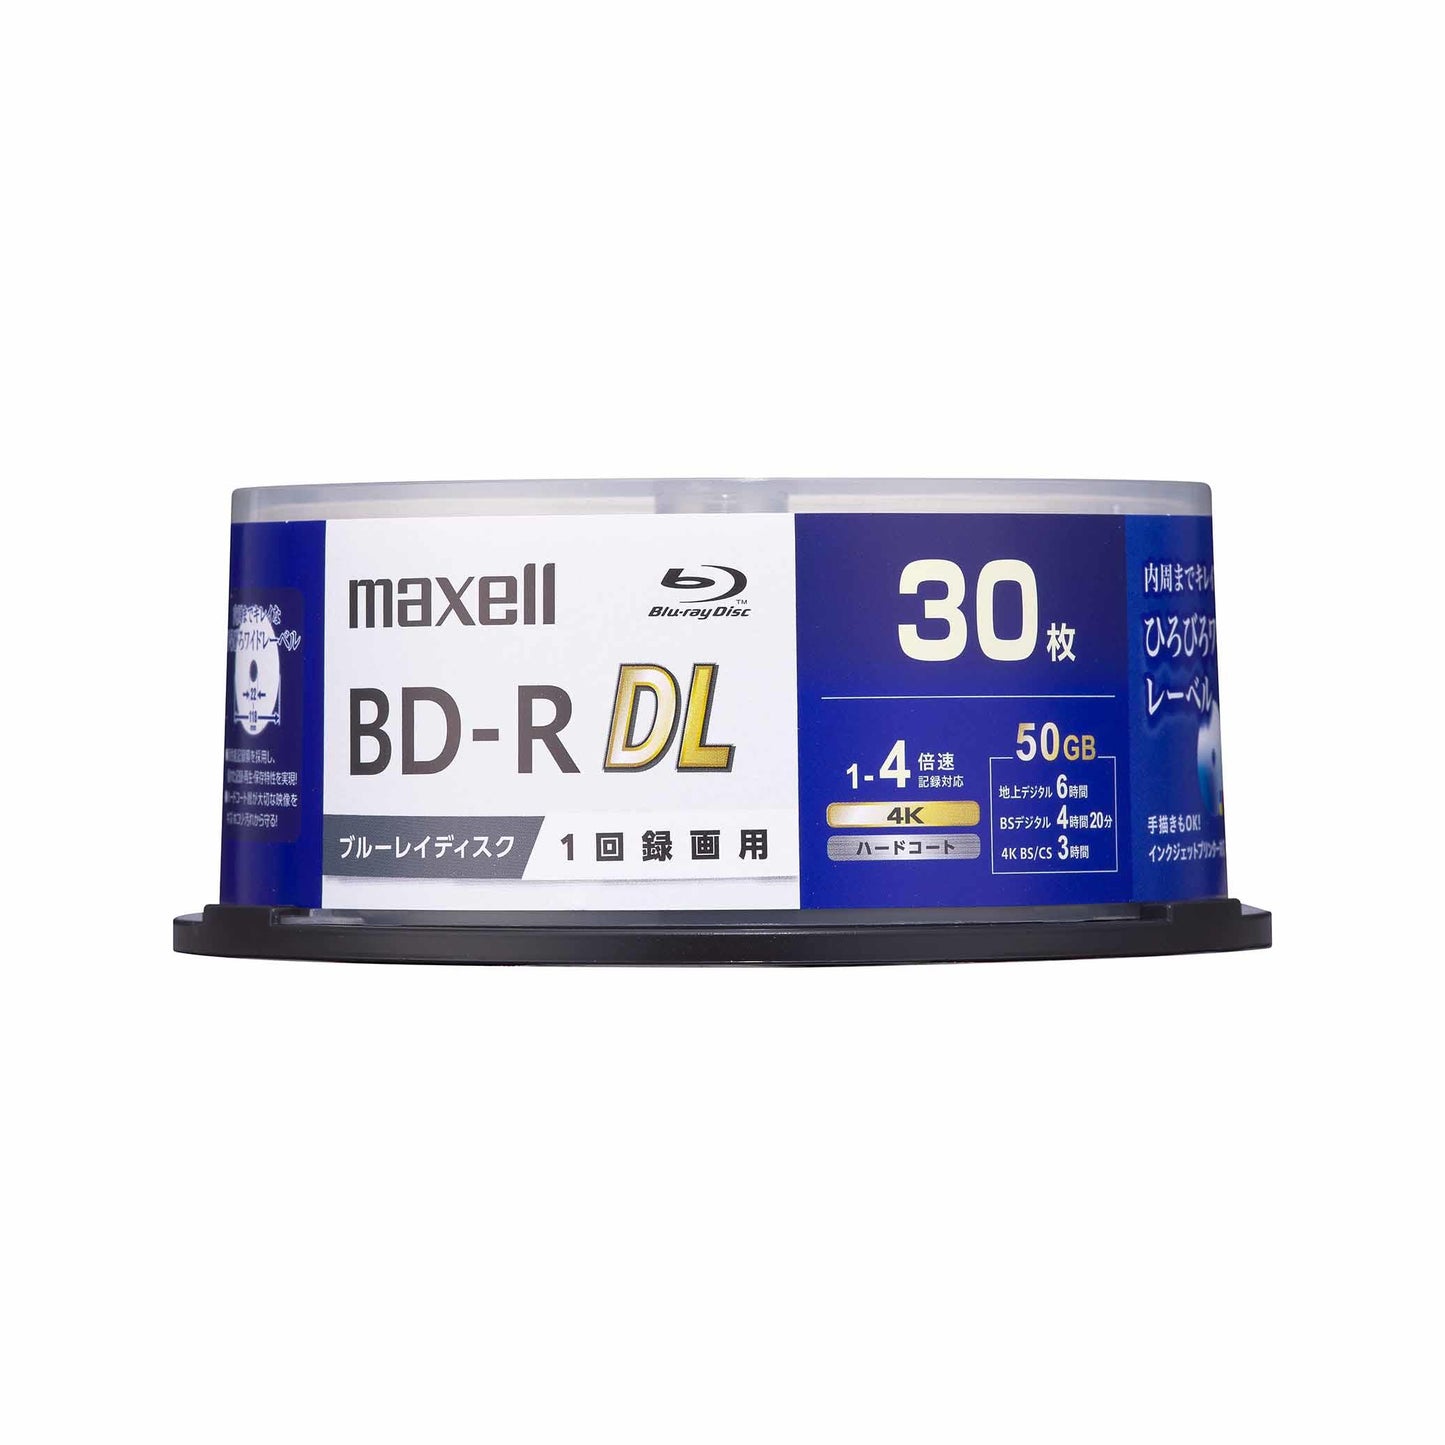 マクセル 録画用 ブルーレイディスク BD-R DL ひろびろワイドレーベルディスク (1～4倍速記録対応) 30枚入り スピンドルケース BRV50WPG.30SP